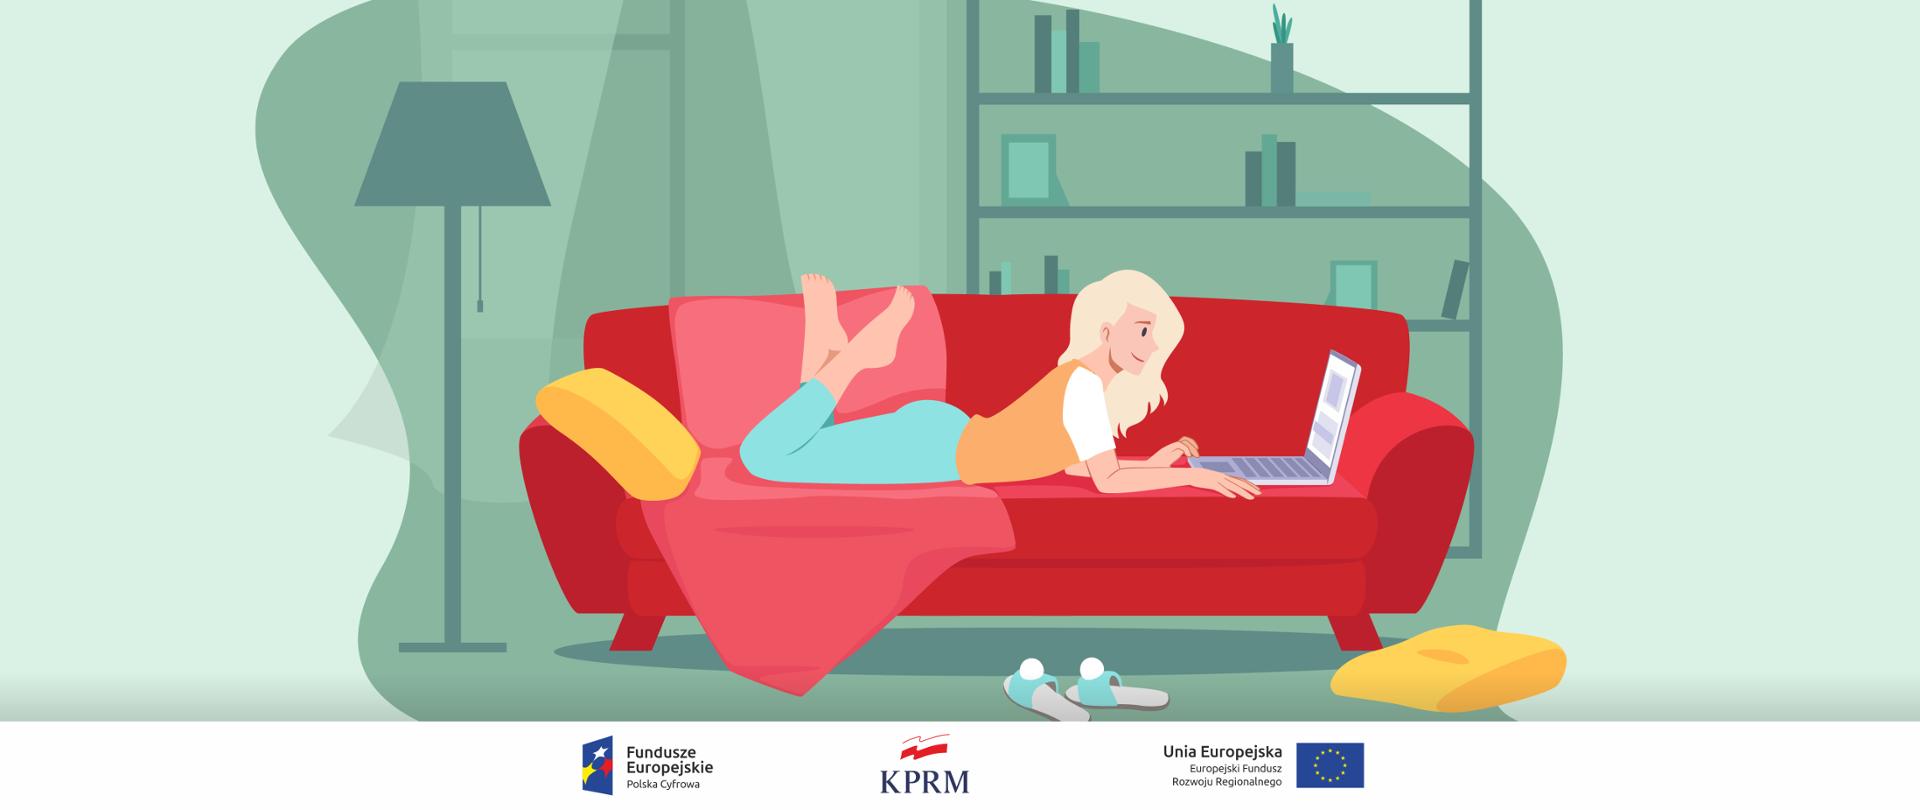 Kolorowa grafika wektorowa - kobieta leży na brzuchu na czerwonej kanapie, korzysta z laptopa.